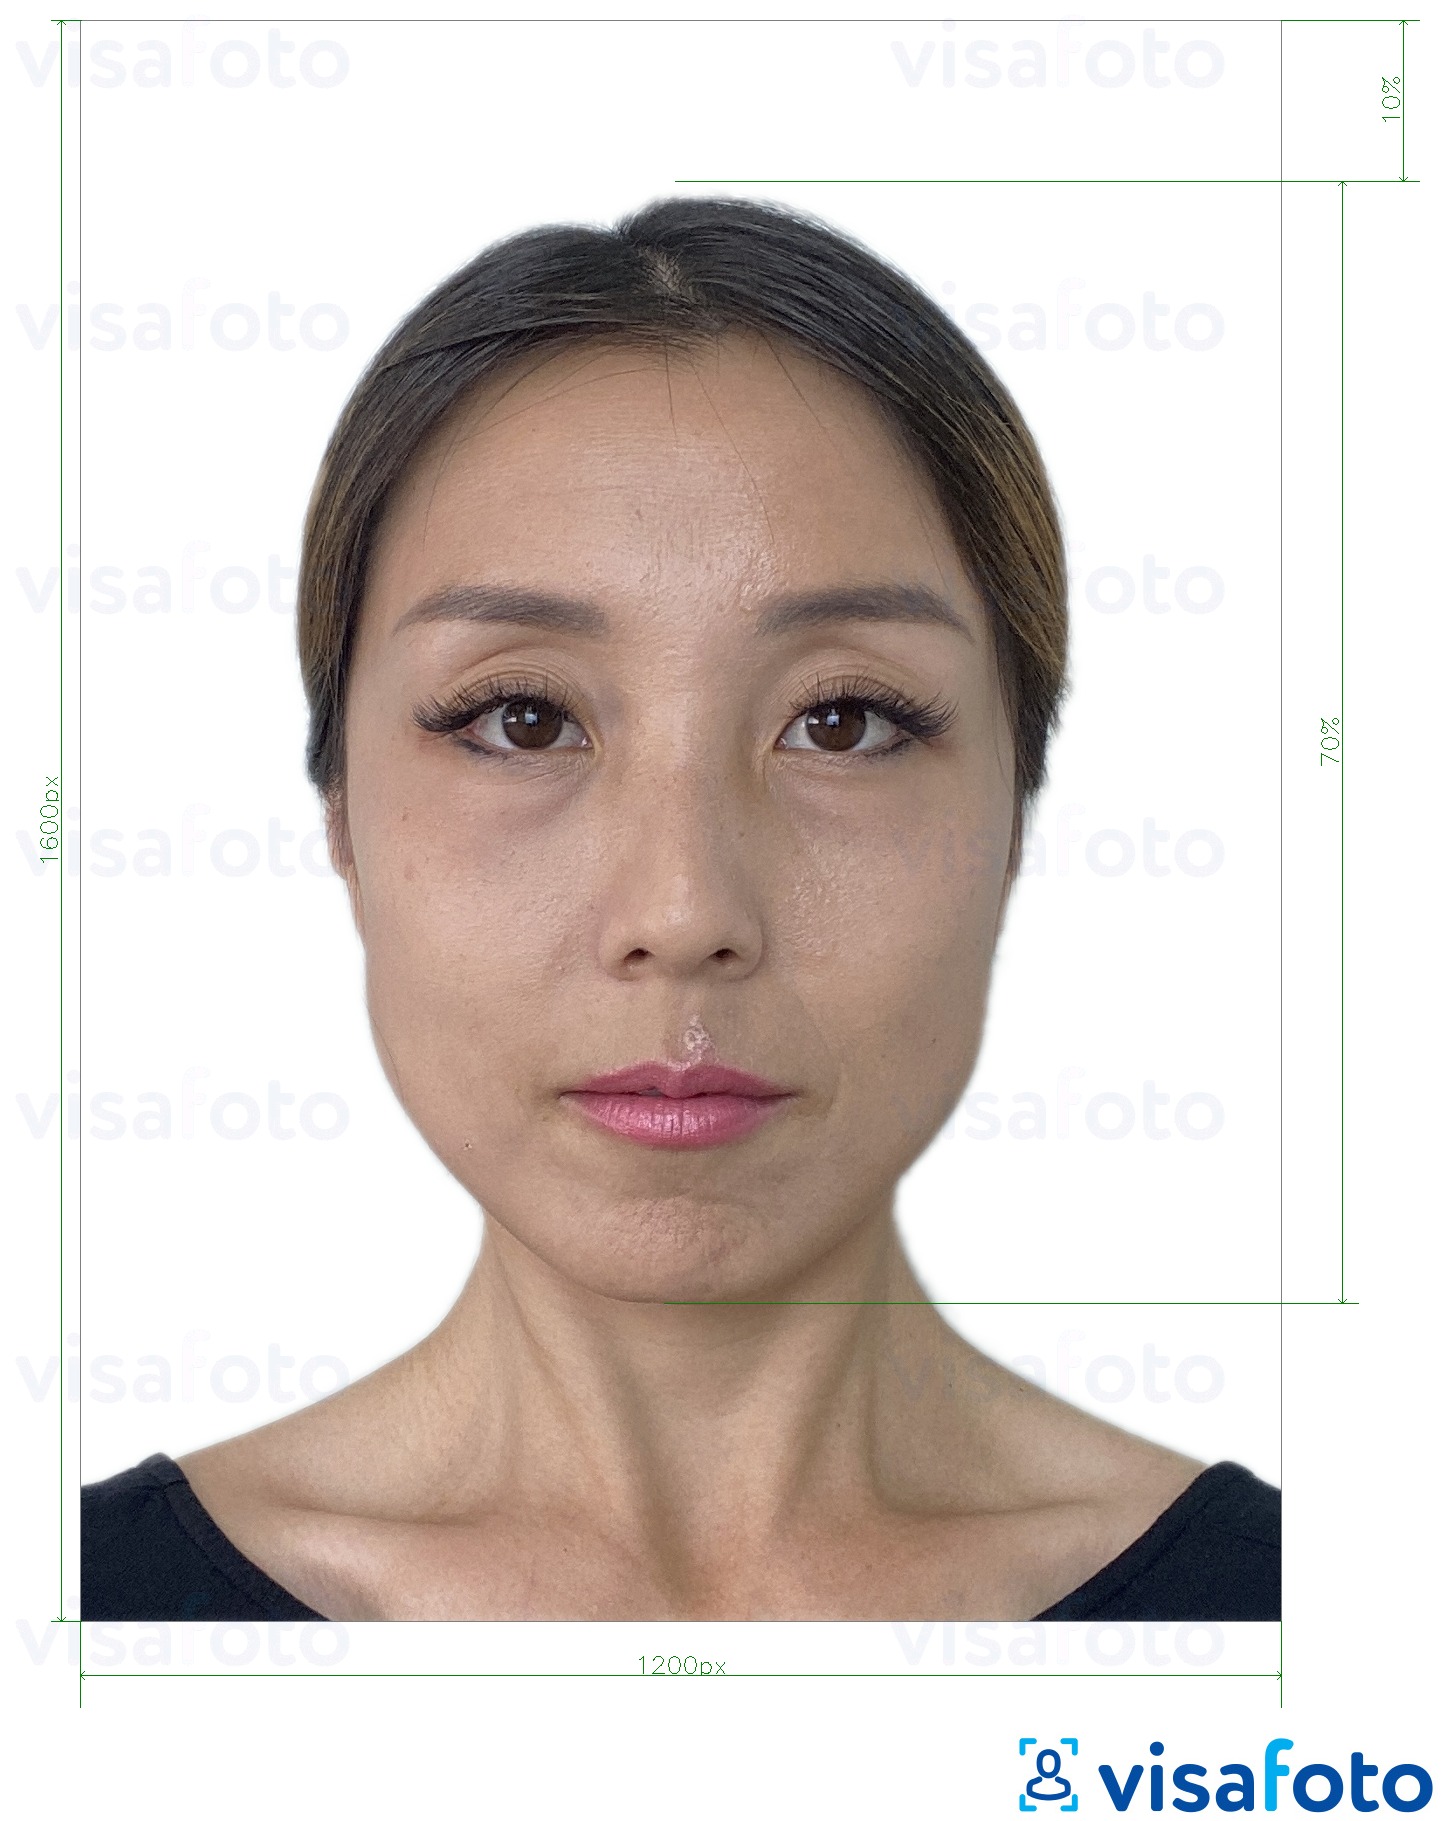 Tam boyut belirtimi olan Hong Kong çevrimiçi e-vize 1200x1600 piksel için fotoğraf örneği